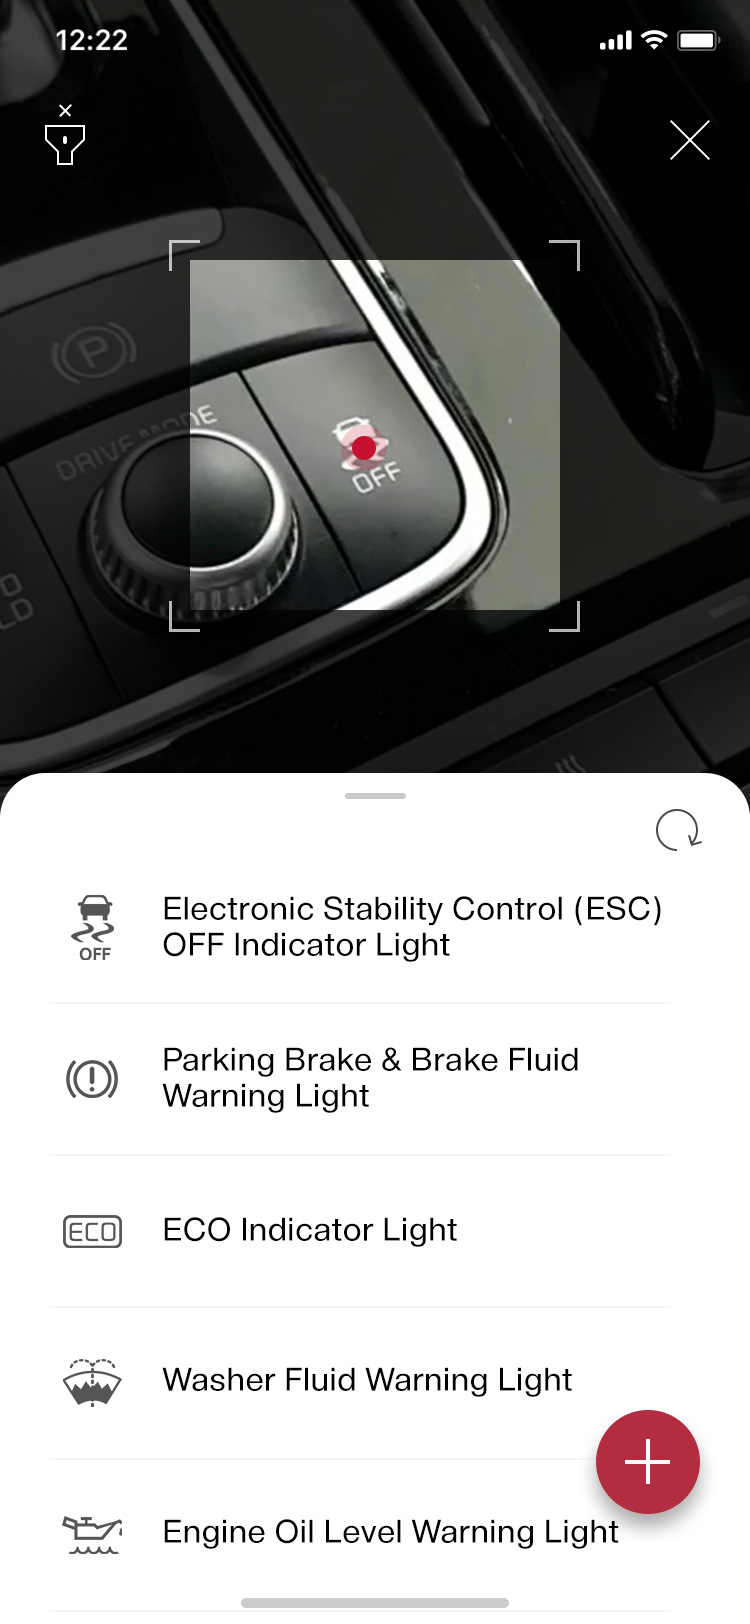 Kia lansează manualul de utilizare al mașinii sub formă de aplicație pentru mobil